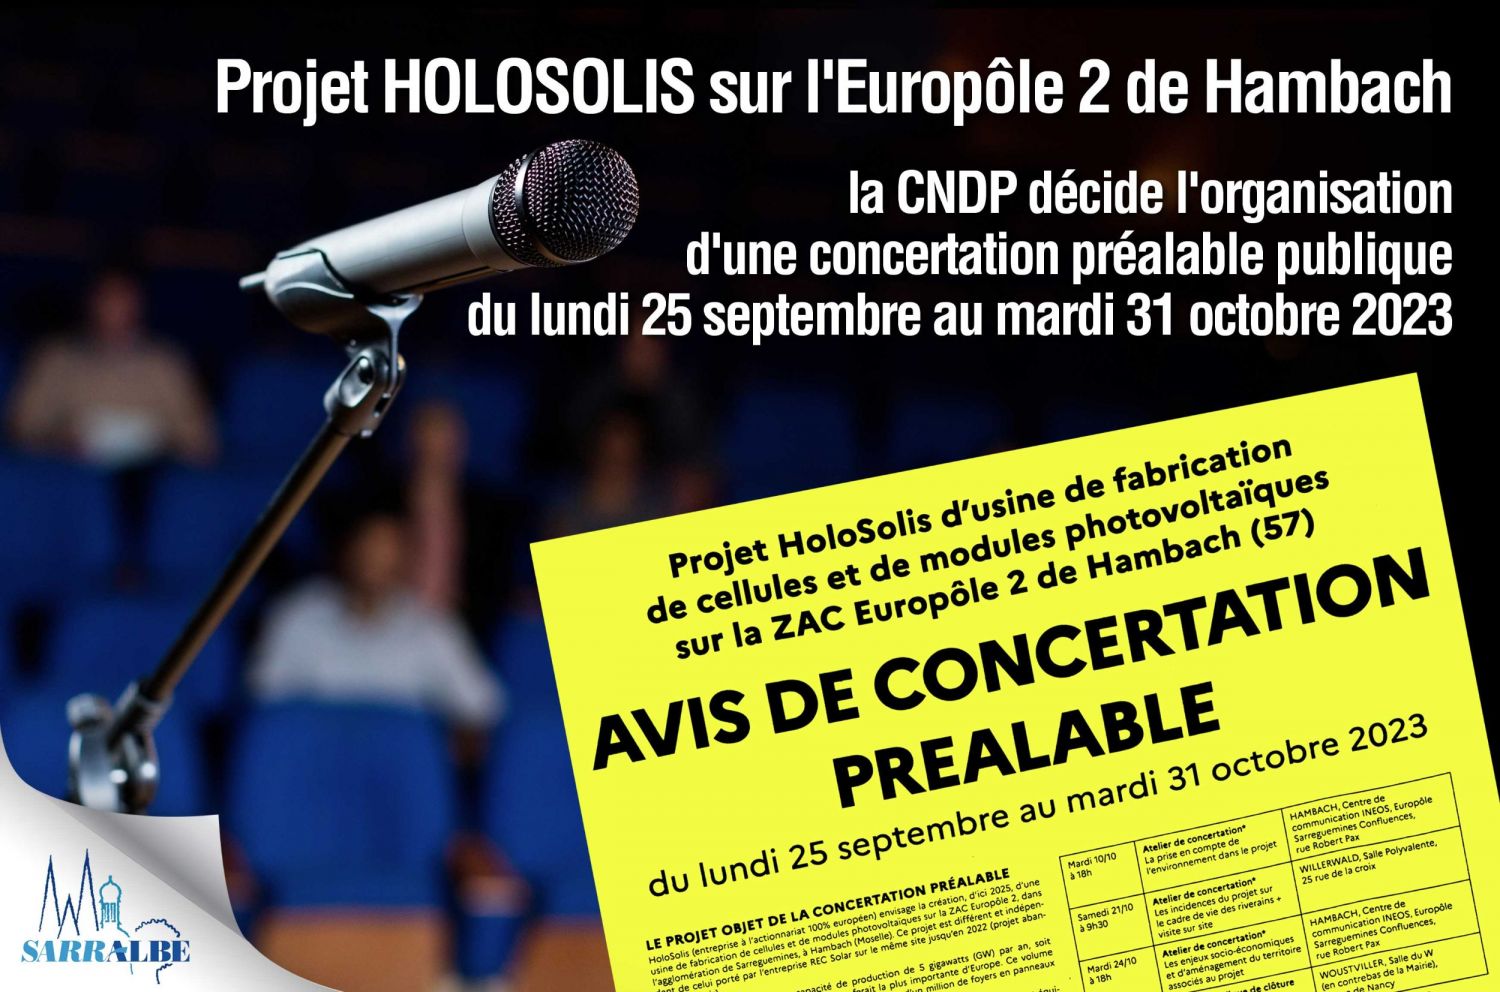 Projet HOLOSOLIS sur l'Europôle 2 de Hambach - AVIS DE CONCERTATION PRÉALABLE